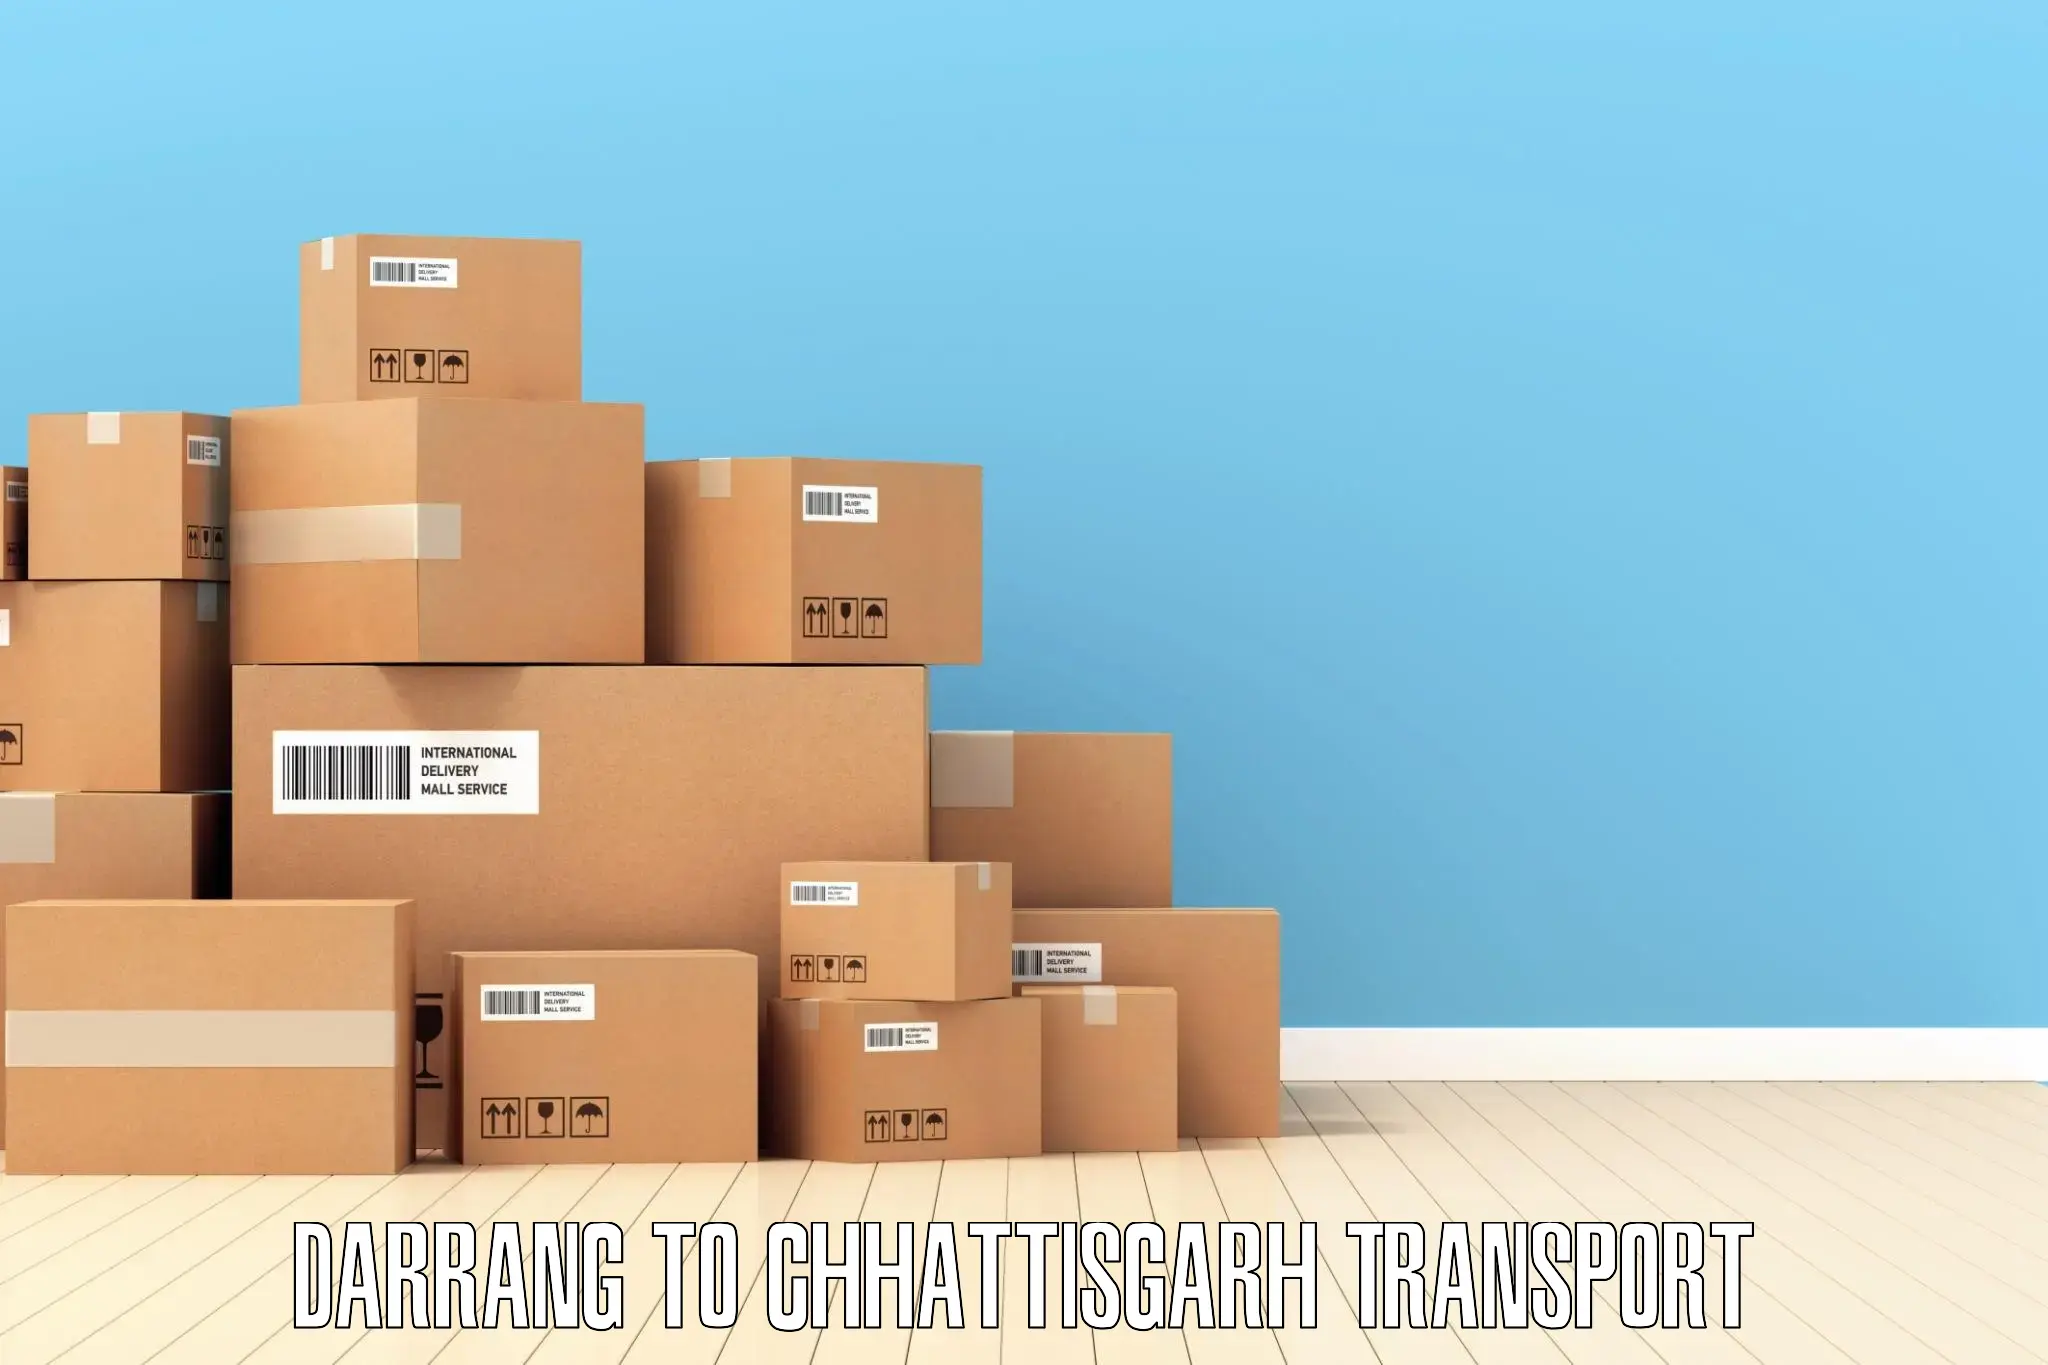 Two wheeler parcel service Darrang to Chhattisgarh